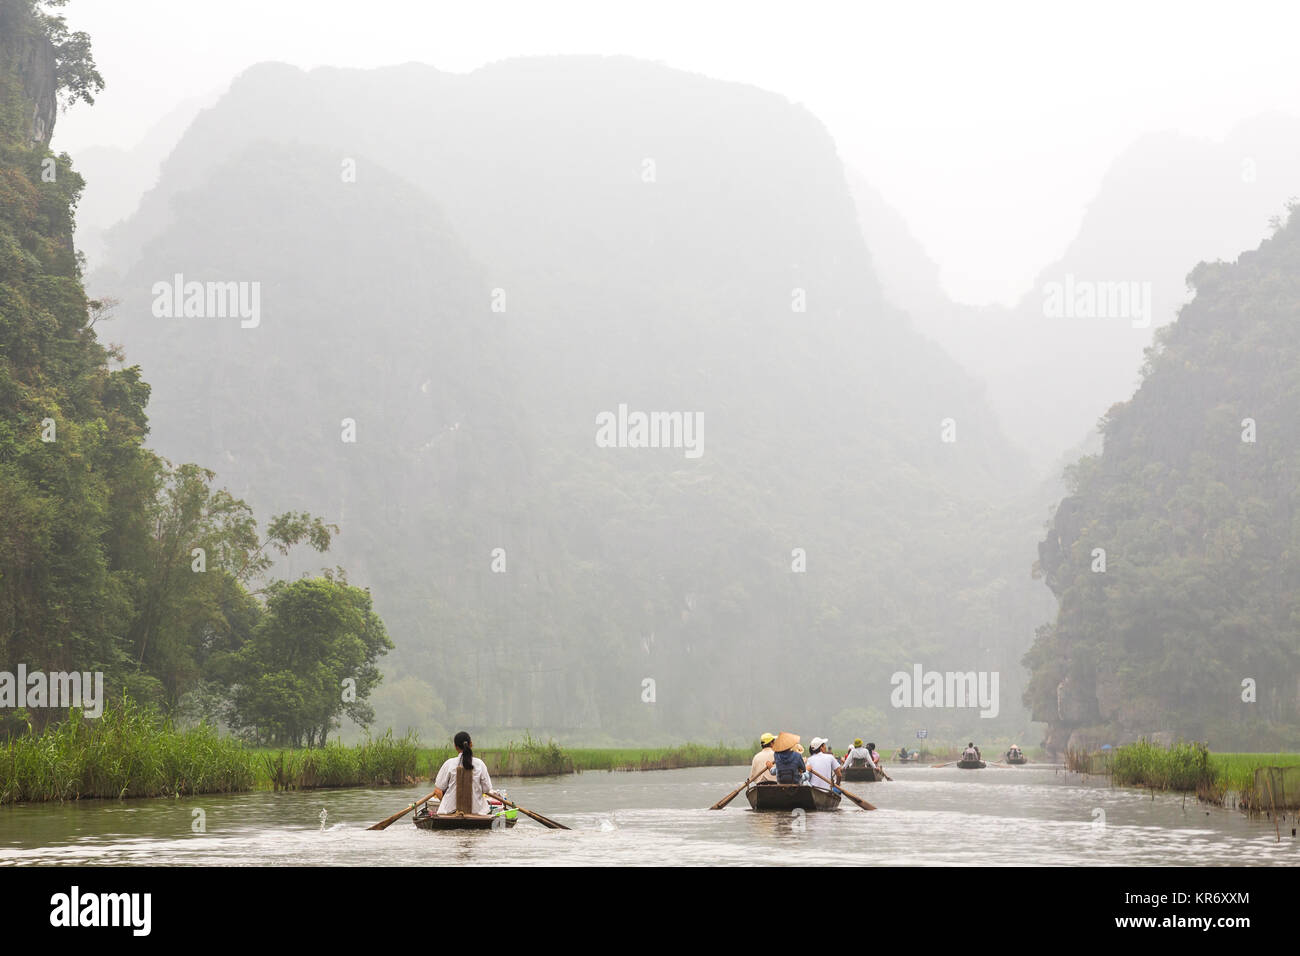 Gruppi di persone in imbarcazioni a remi sulle rive di un fiume e le montagne sullo sfondo. Foto Stock